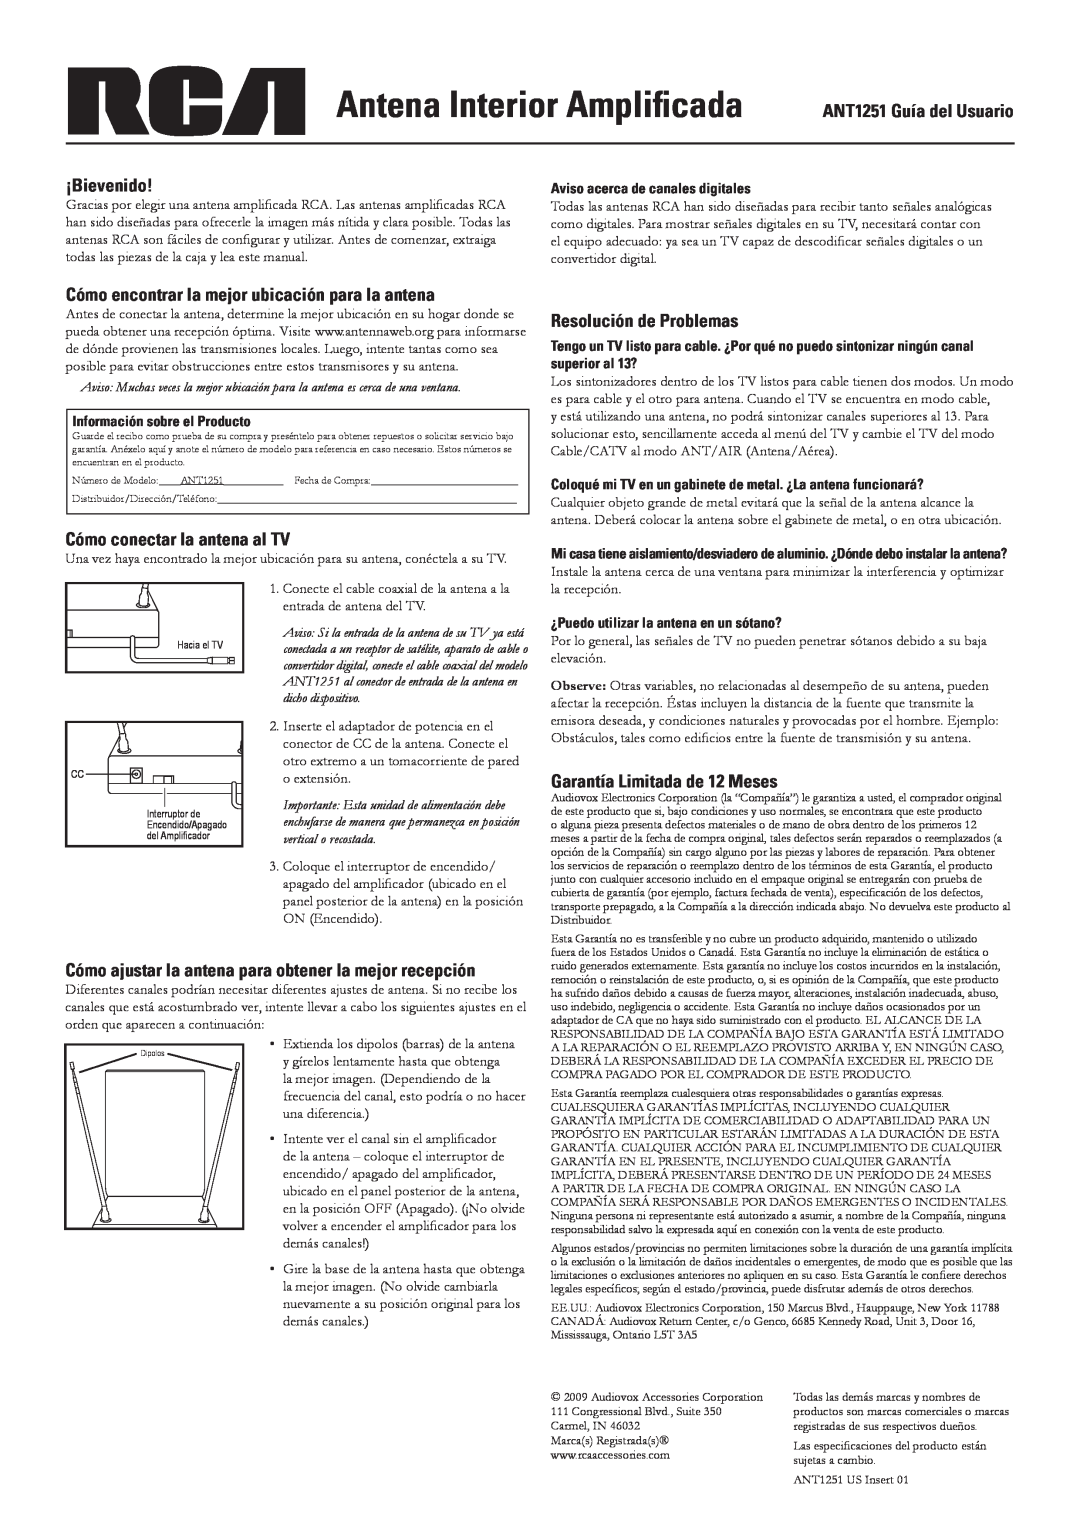 RCA ANT1251 Guía del Usuario, ¡Bievenido, Cómo encontrar la mejor ubicación para la antena, Resolución de Problemas 